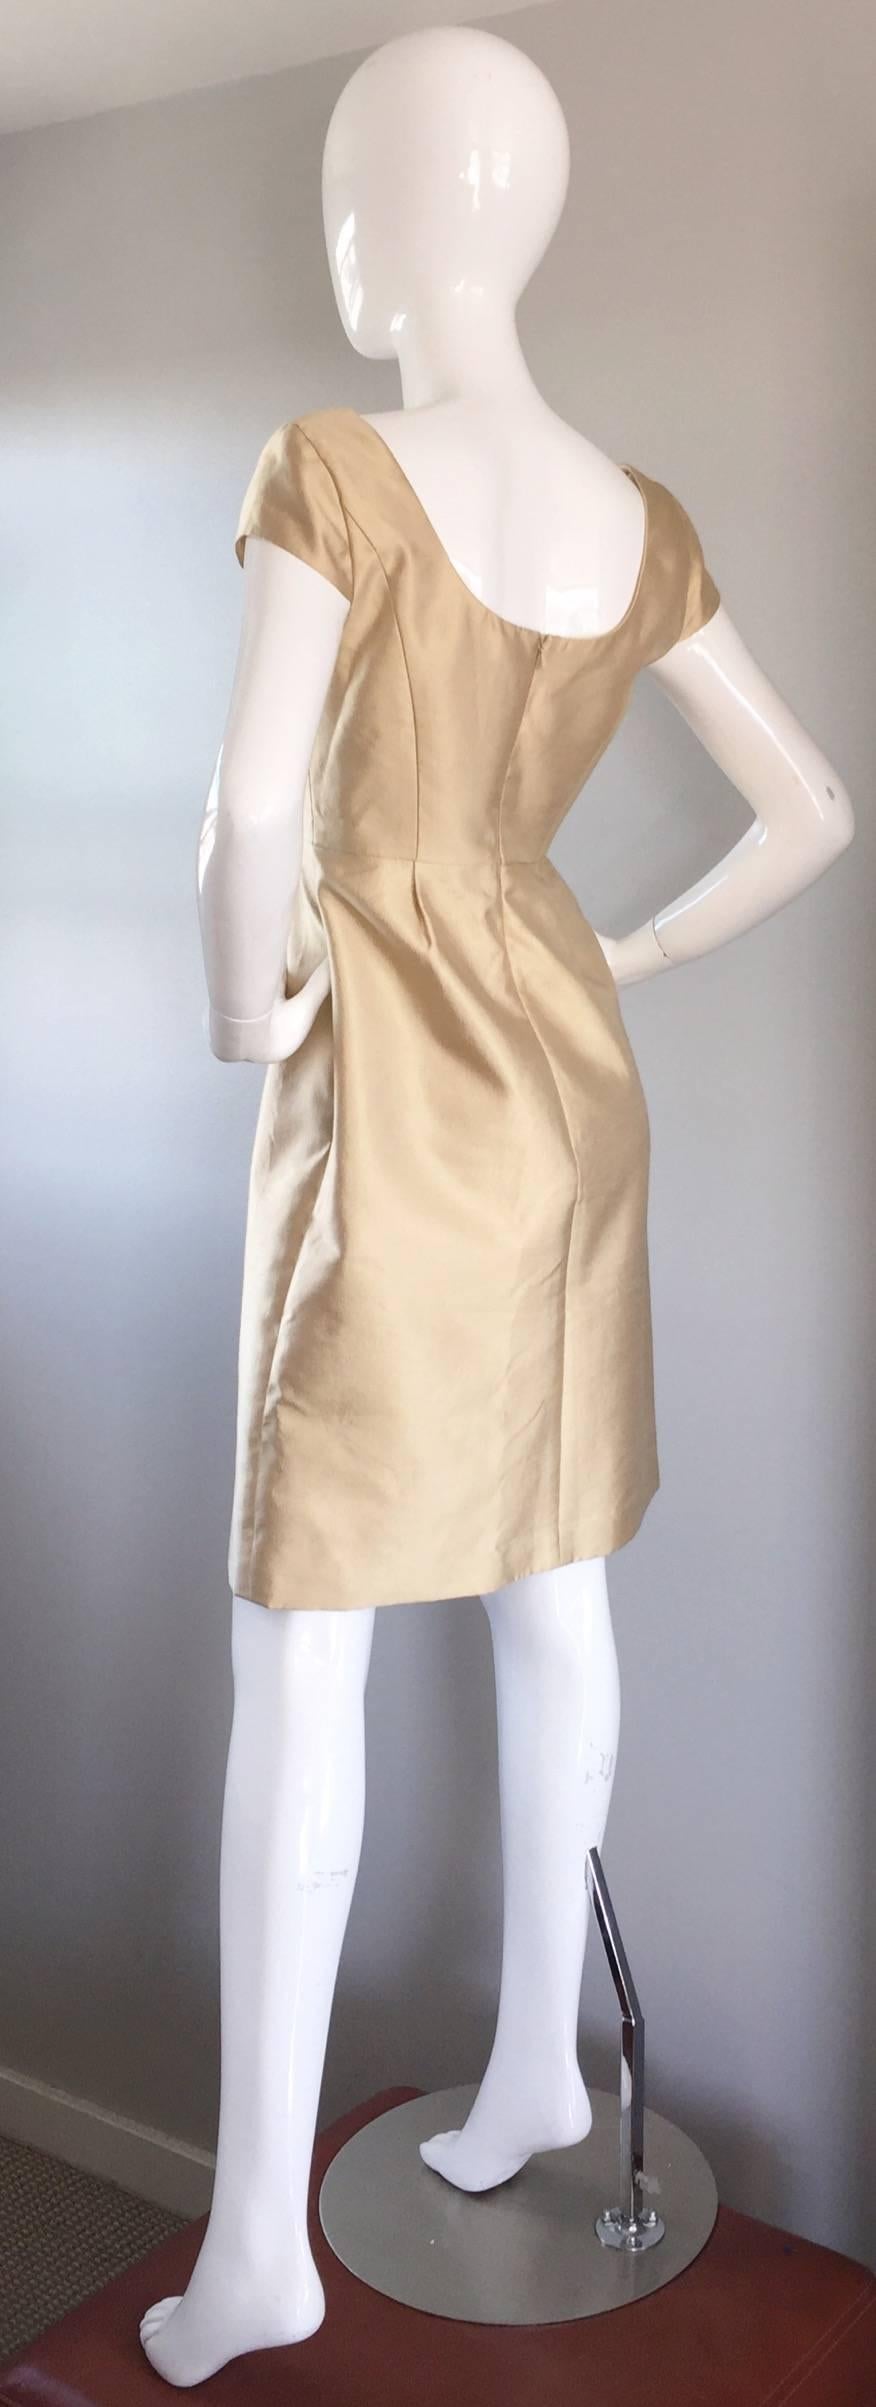 Or Badgley Mischka - Robe en soie ajustée et évasée en or clair de style des années 50, flatteuse en vente